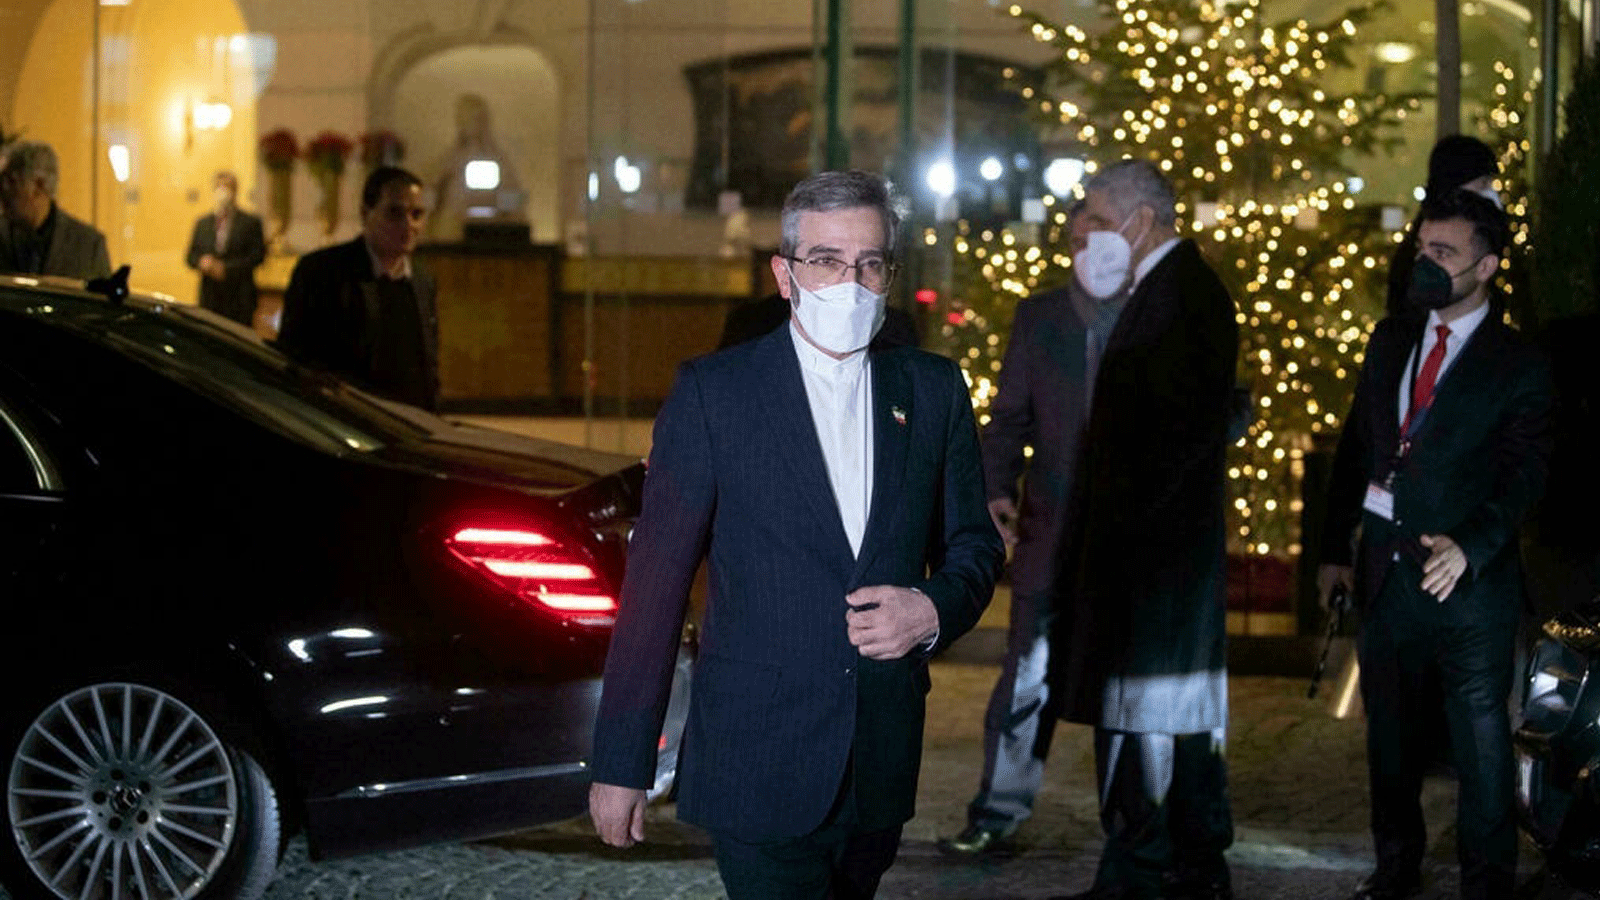  كبير المفاوضين الإيرانيين علي باقري كاني يغادر المحادثات النووية في قصر كوبرغ بفيينا في 27 كانون الأول/ديسمبر 2021